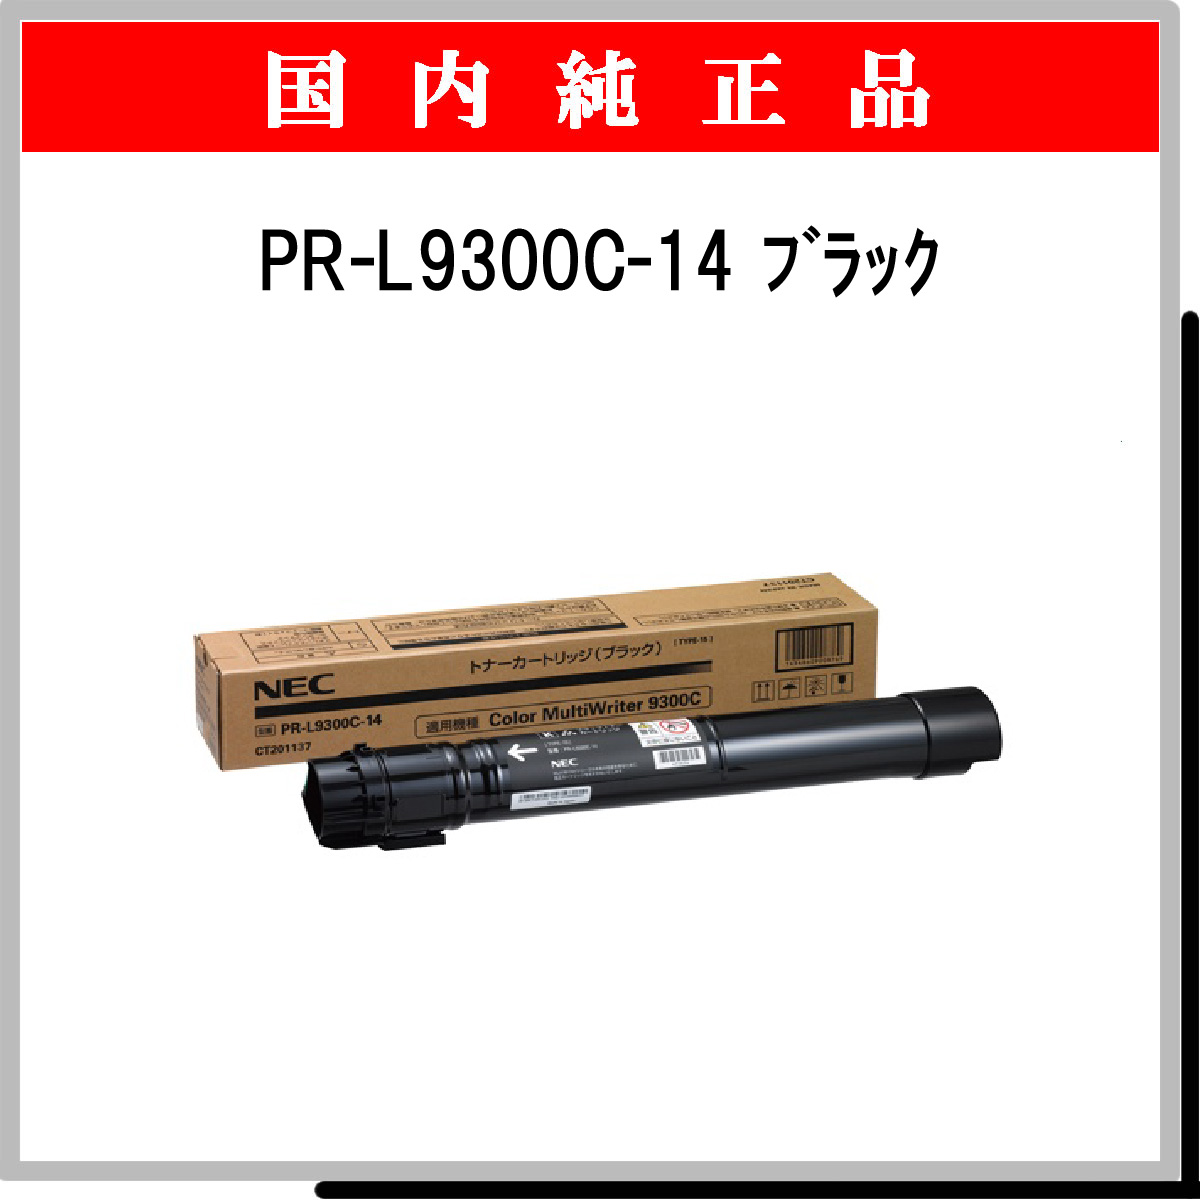 PR-L9300C-14 純正